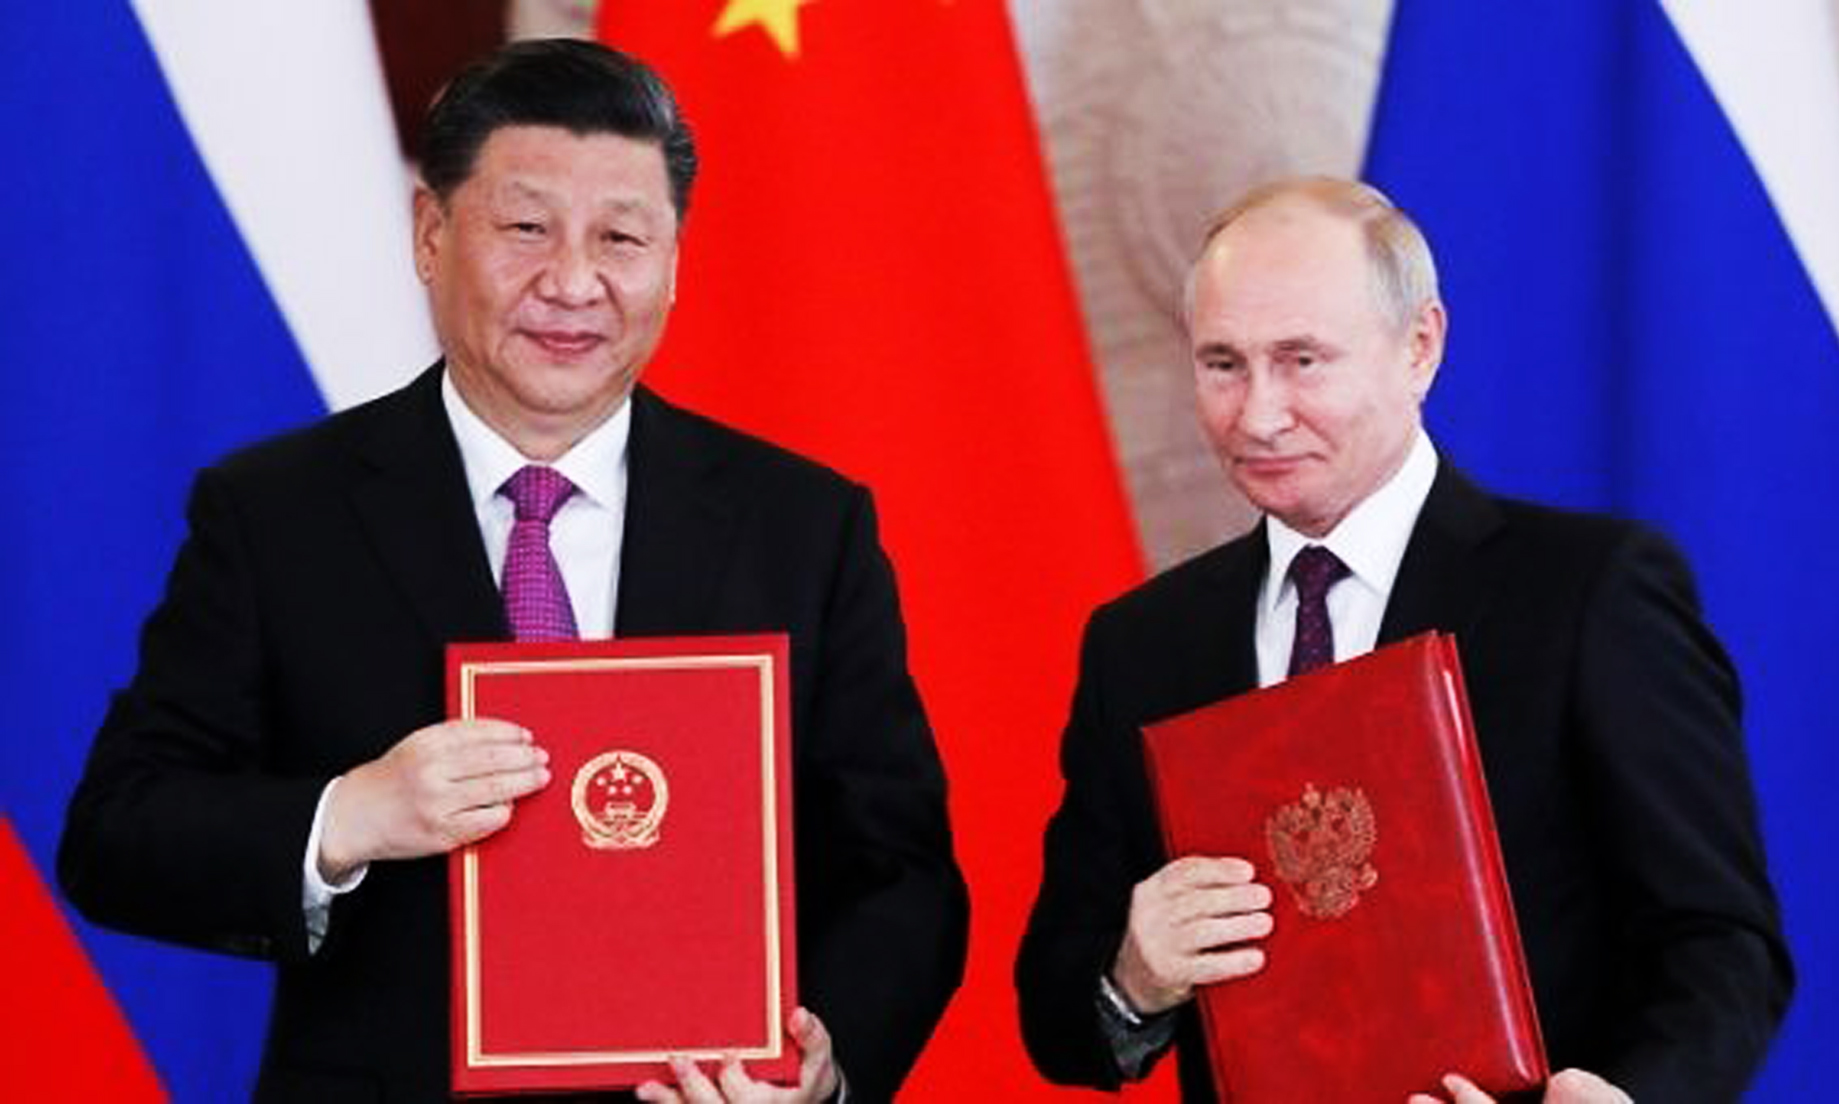 China, Russia Will Support Stabilization in Venezuela: Putin